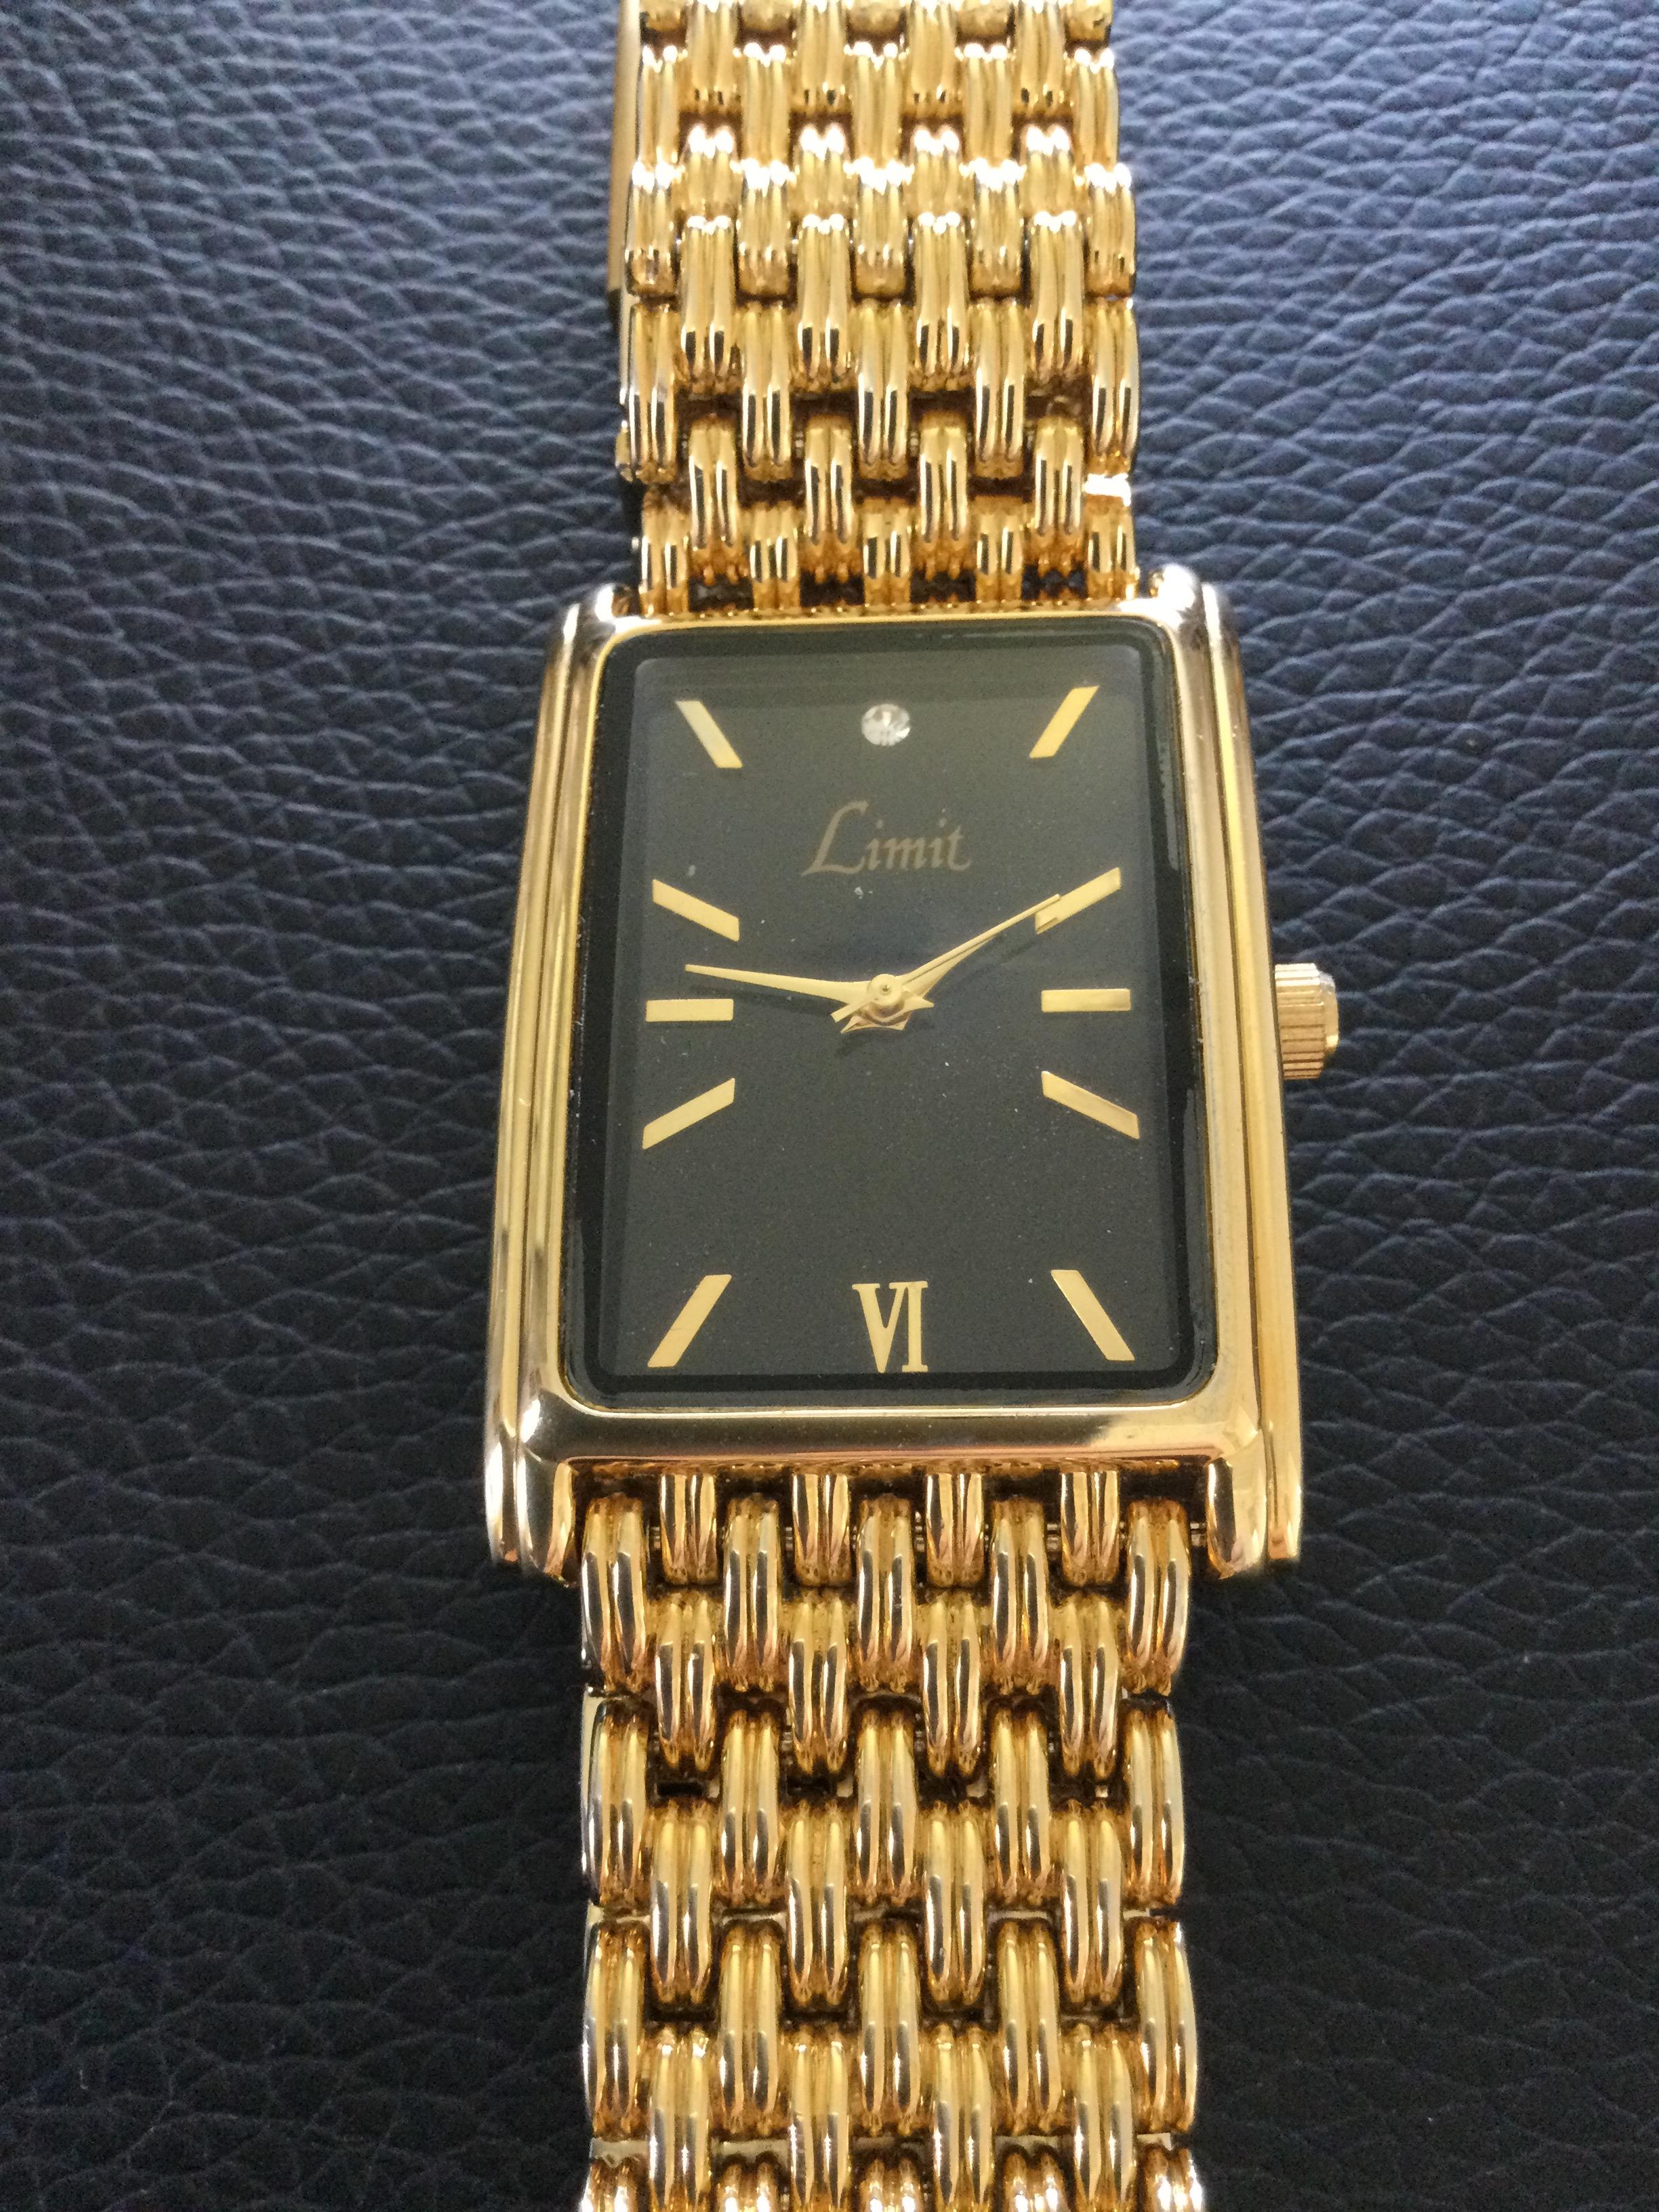 Limit Unisex Quartz Gold Plated Wristwatch (Gs58)